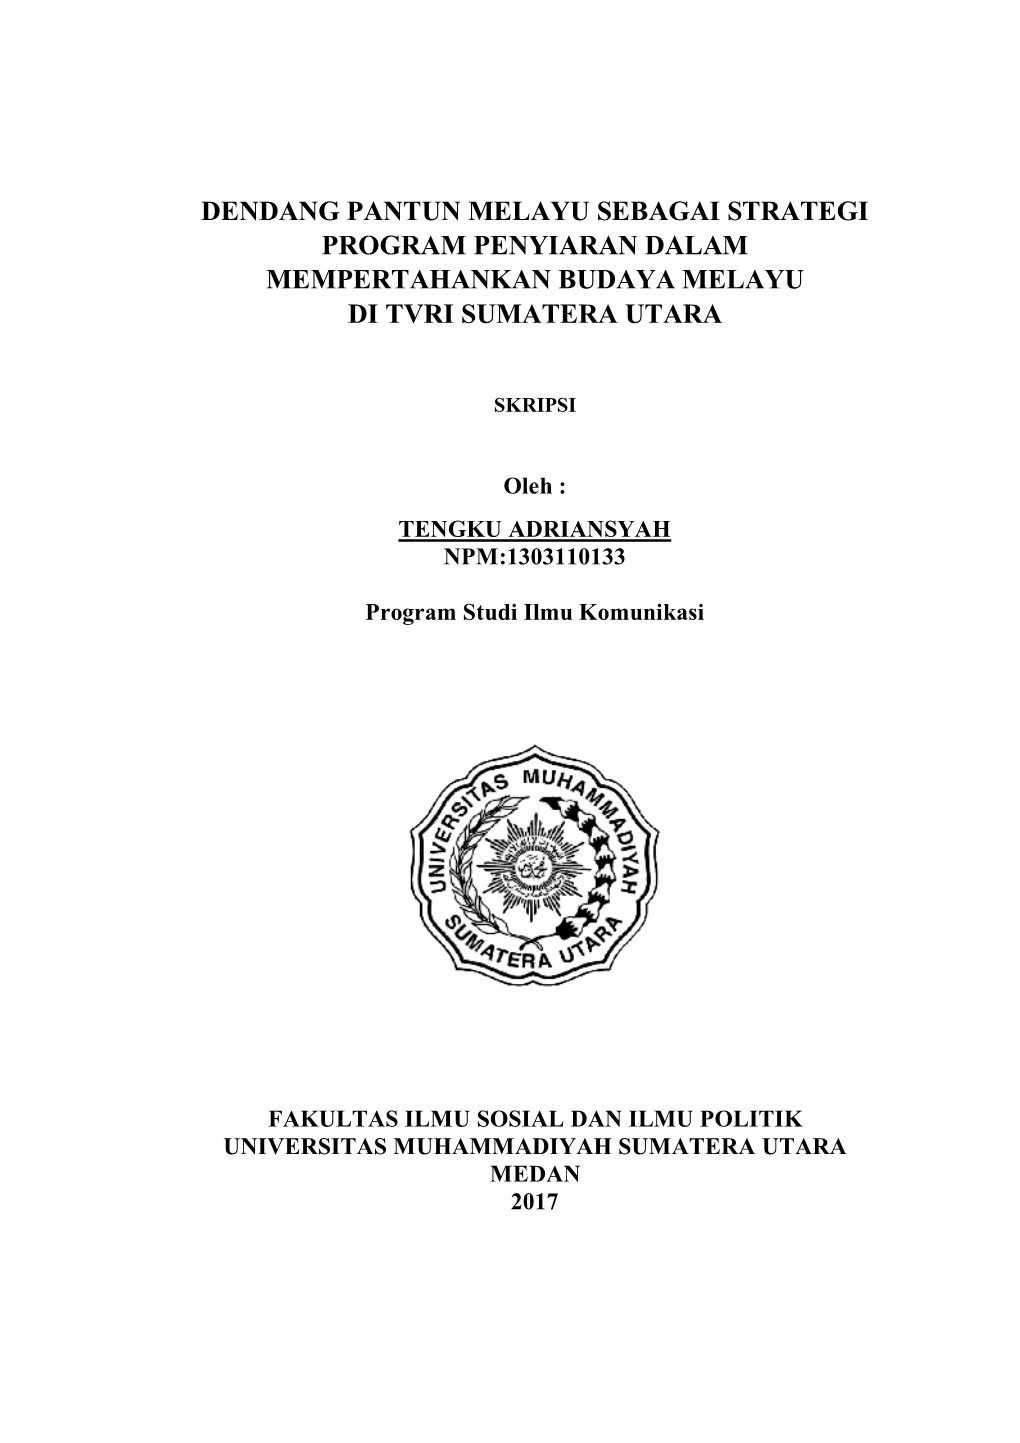 Dendang Pantun Melayu Sebagai Strategi Program Penyiaran Dalam Mempertahankan Budaya Melayu Di Tvri Sumatera Utara